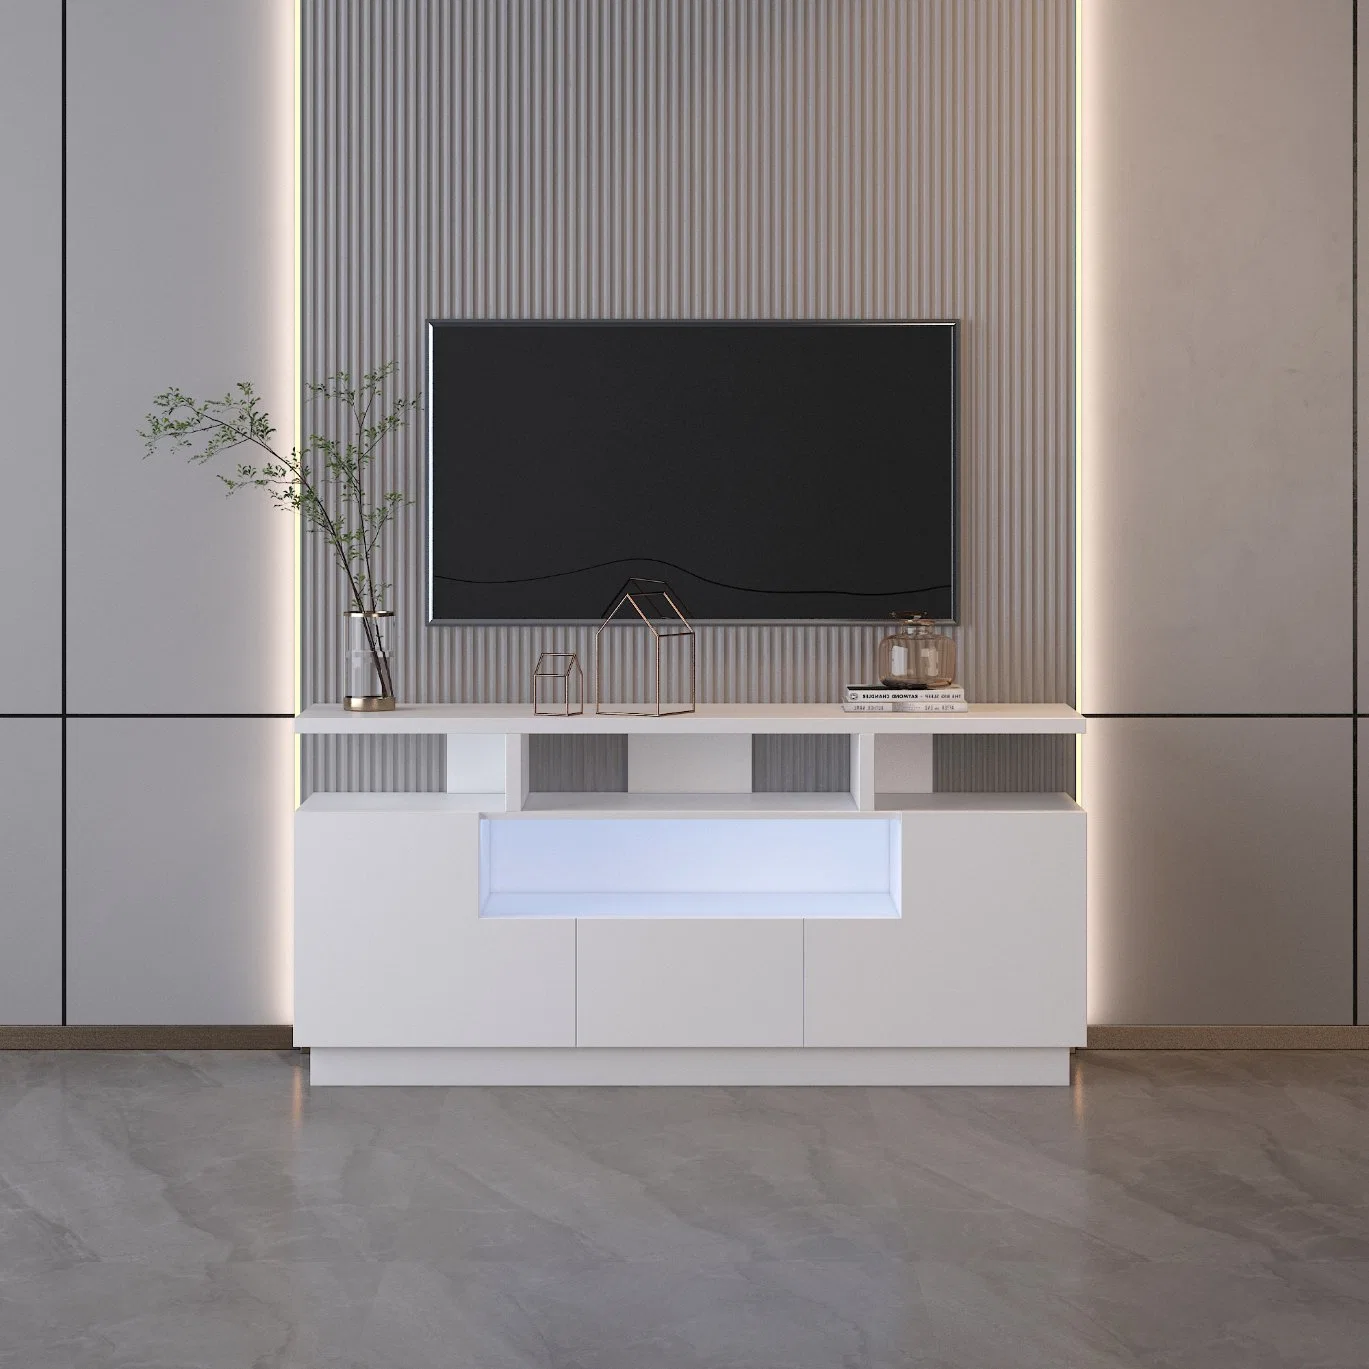 Домашняя мебель гостиной современной деревянной УФ-ТВ" блока Кабинета белого цвета Глянцевый светодиодный индикатор подставки для телевизоров